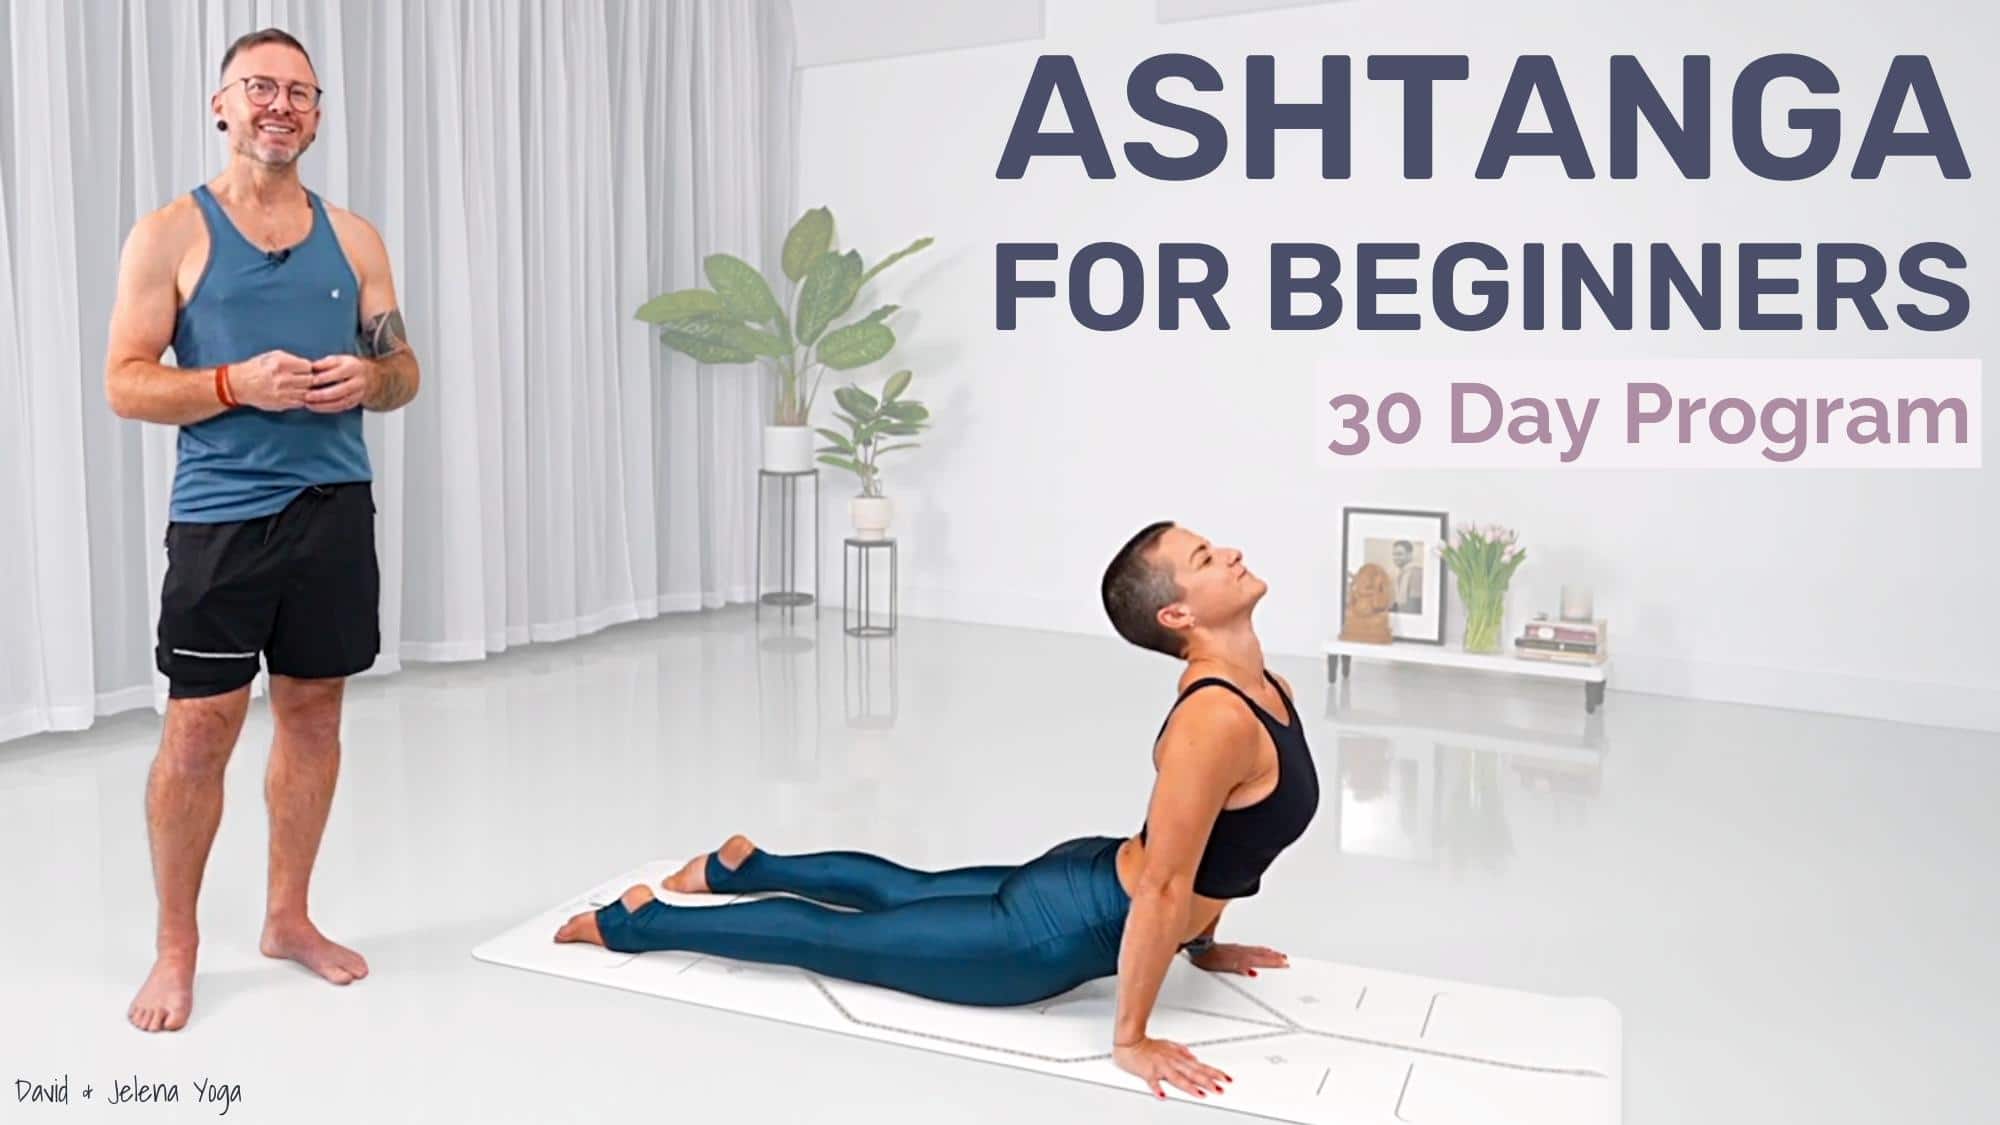 Ashtanga For Beginners 30 Day Program - Learn More